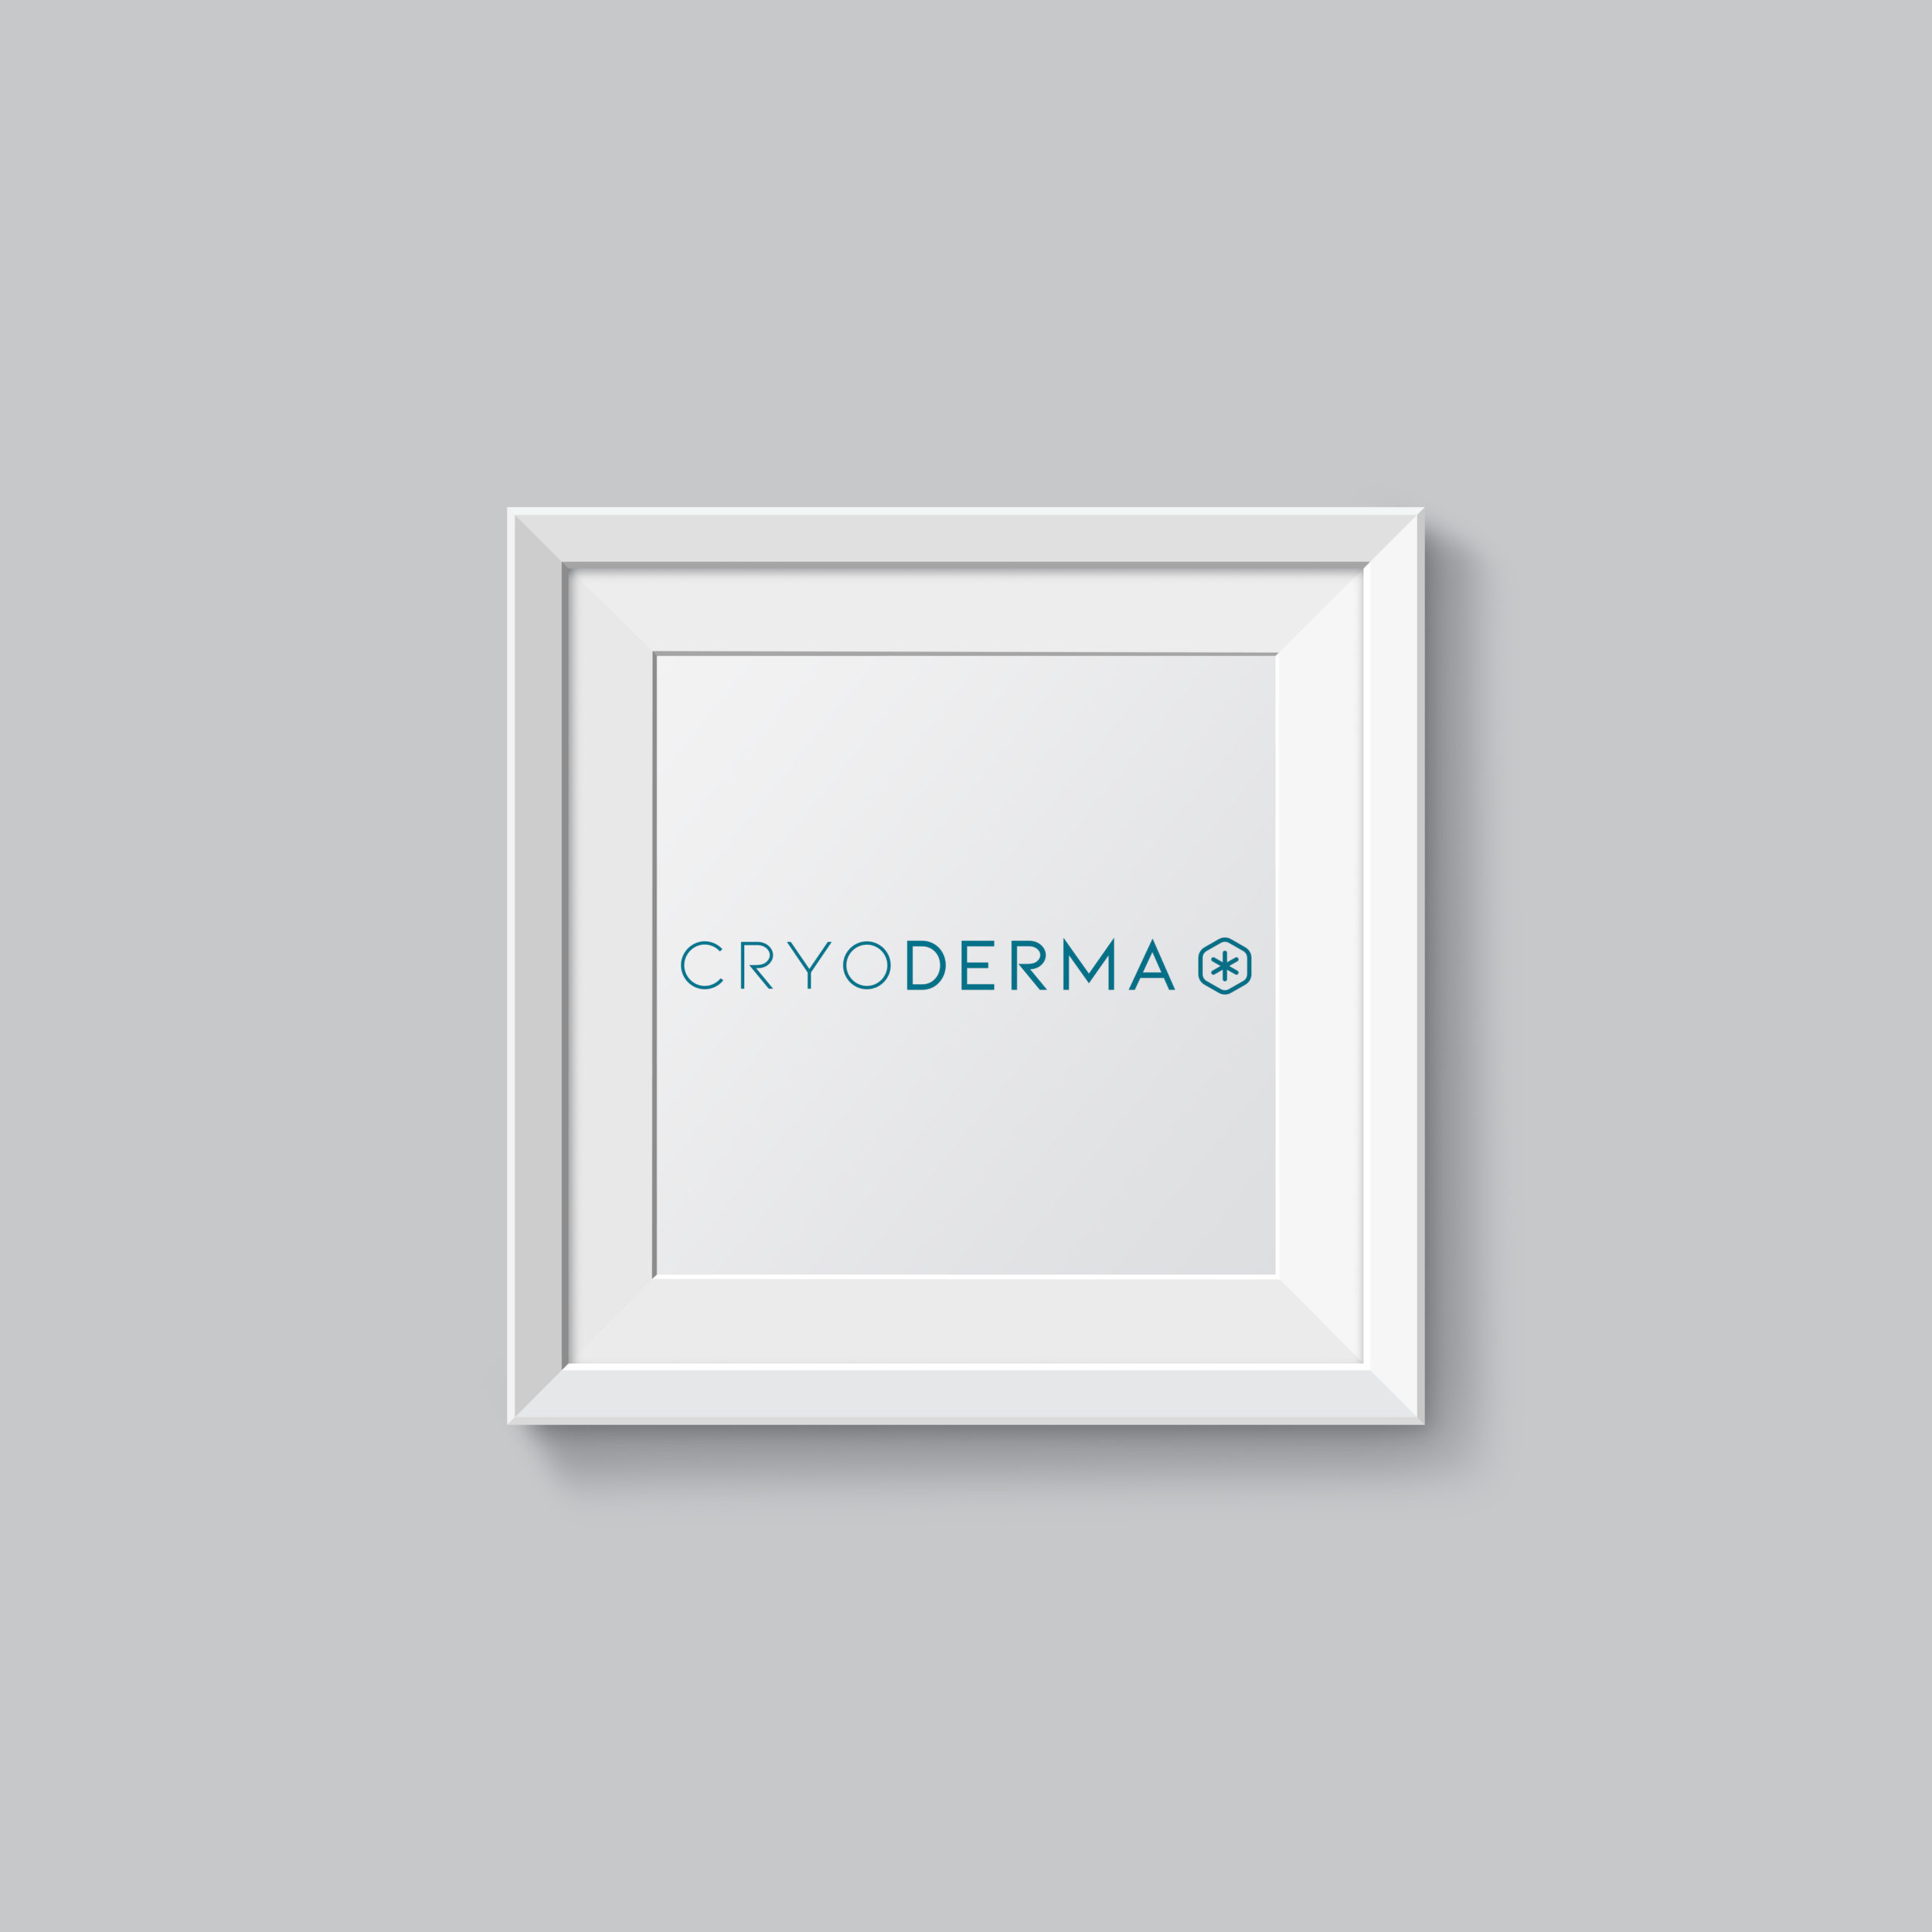 Cadre blanc avec logo Cryoderma accroché sur un mur blanc